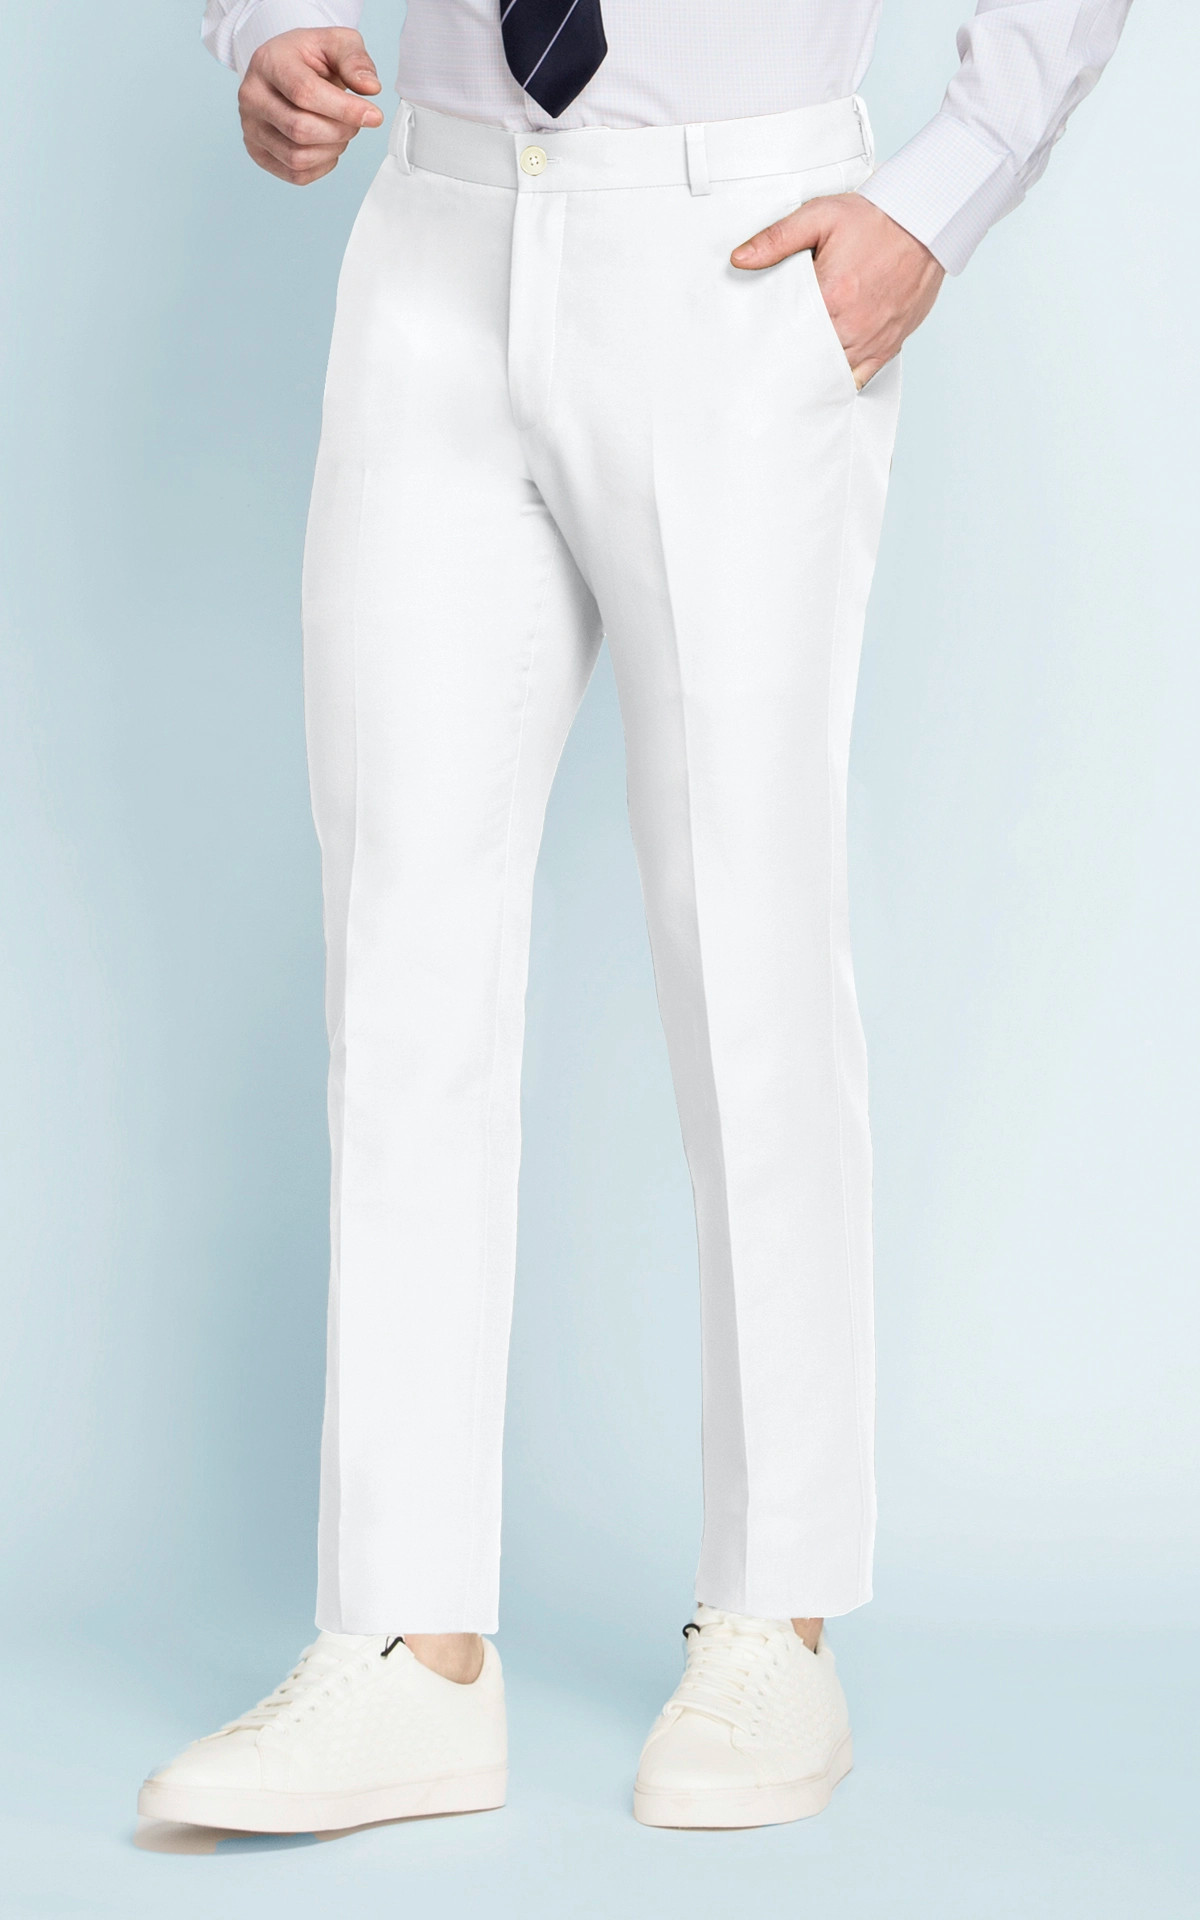 Napoli White Cotton Pants - Hangrr